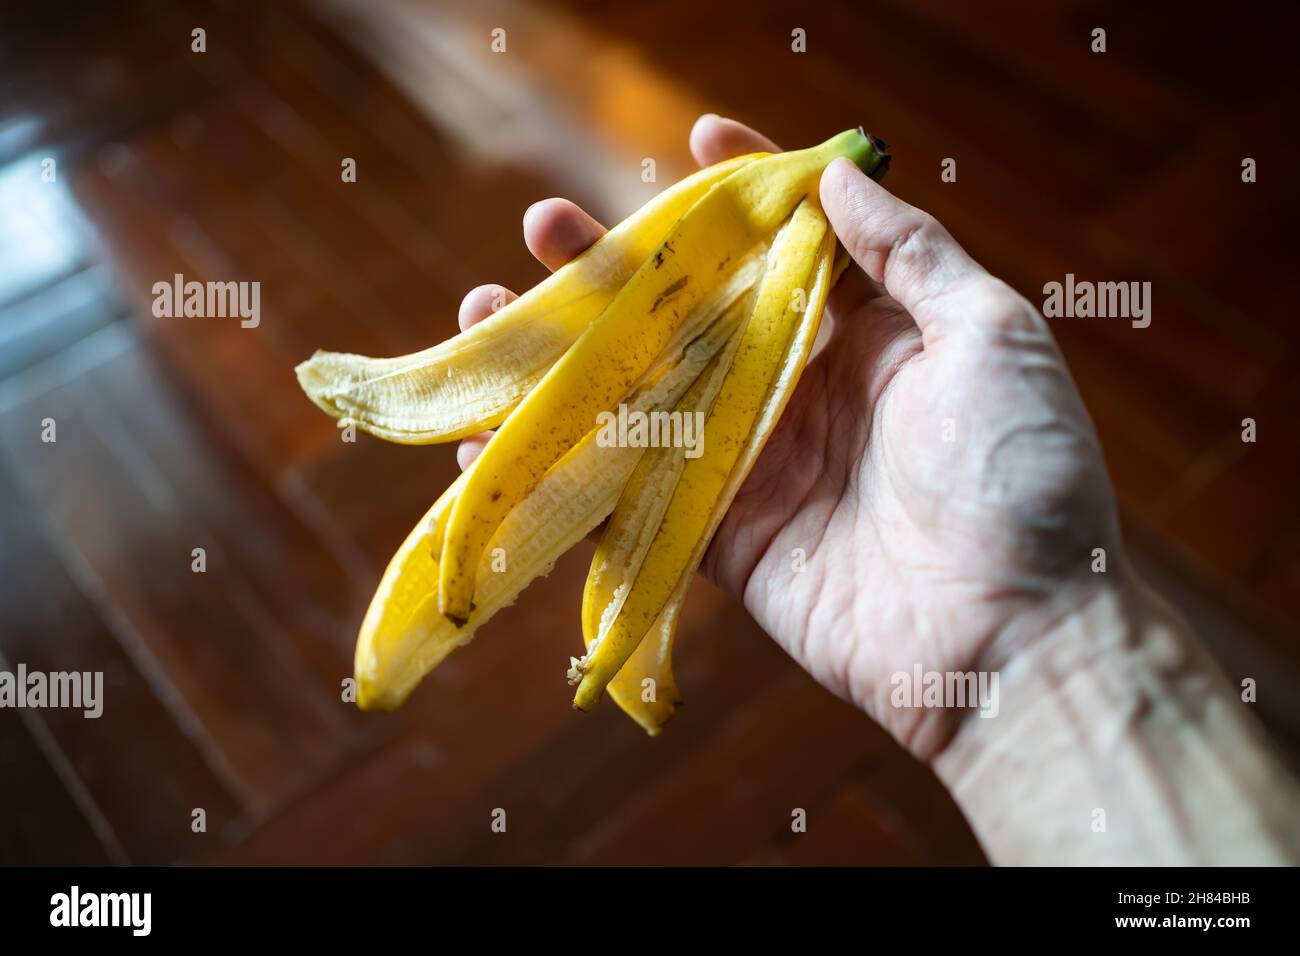 Bananenschale in Männerhand. Bananenschalen sind essbar und nahrhaft. Stockfoto